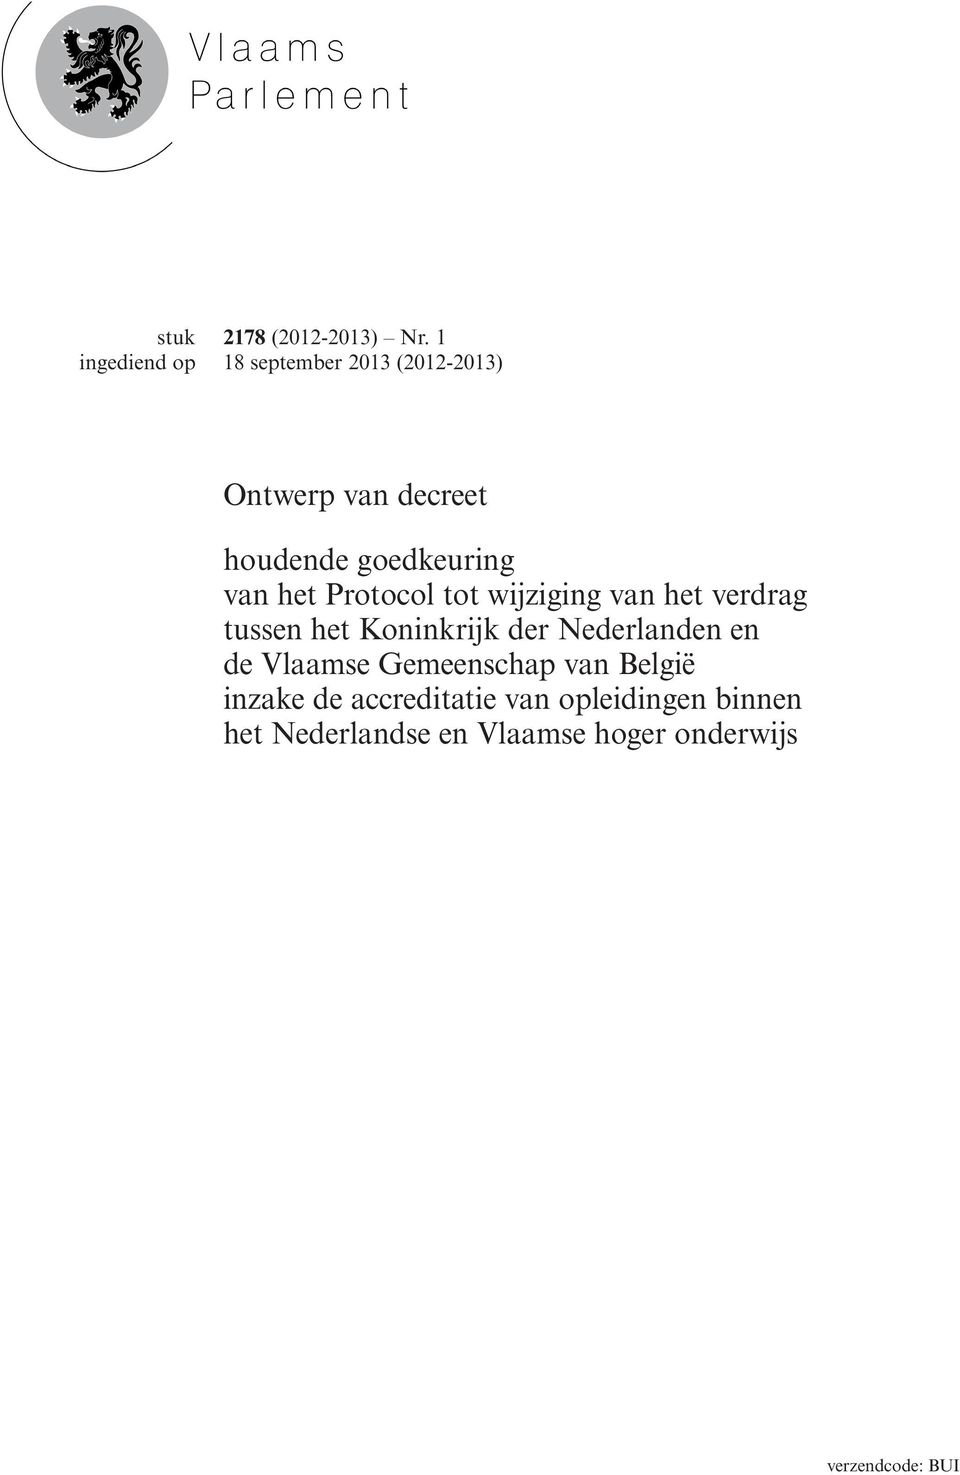 Protocol tot wijziging van het verdrag tussen het Koninkrijk der Nederlanden en de